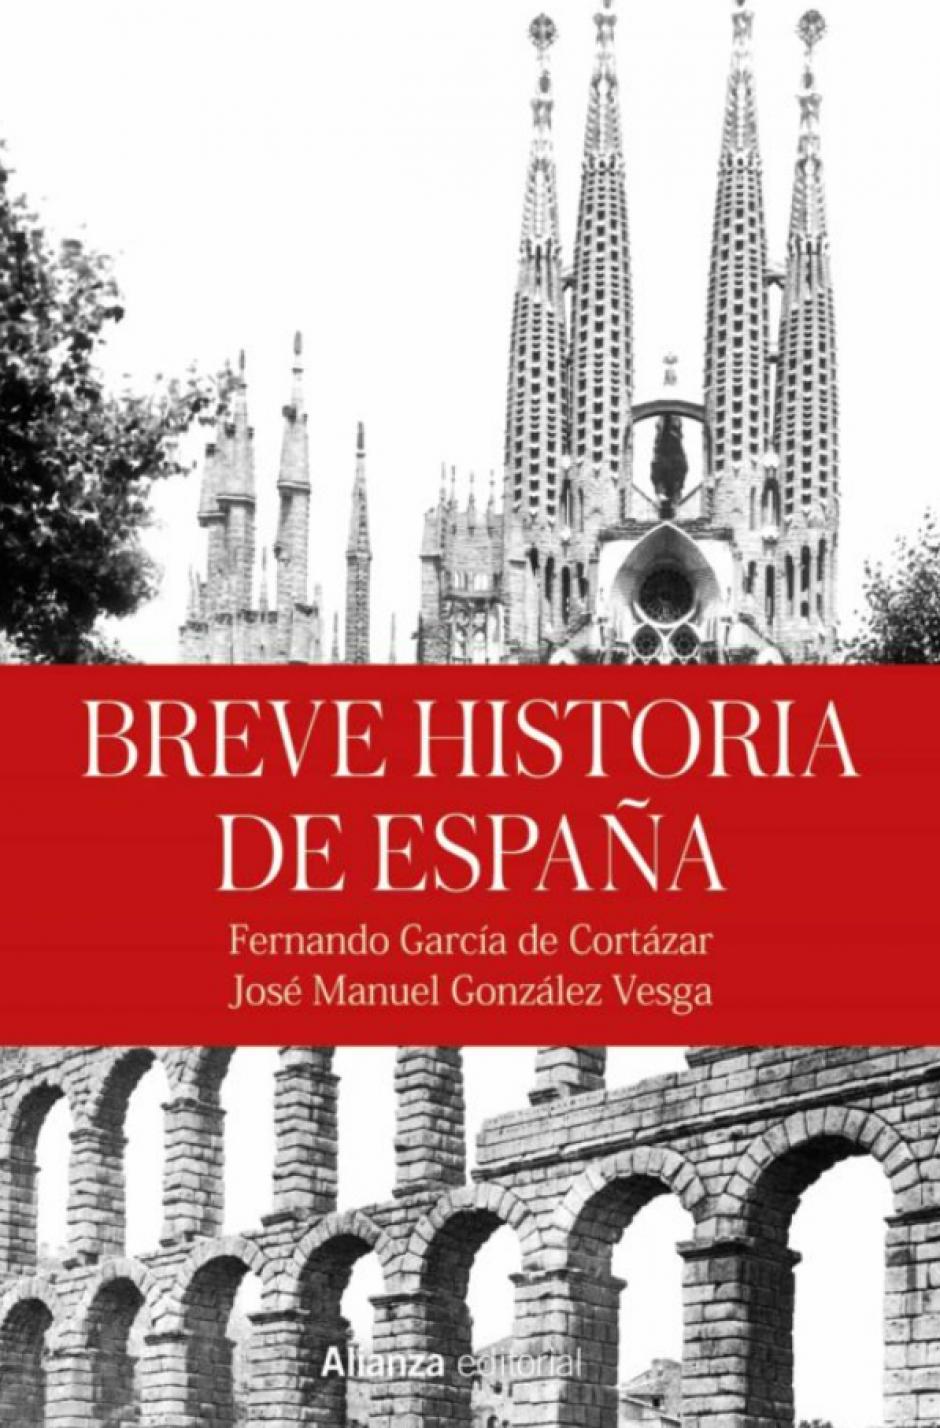 'Breve Historia de España'